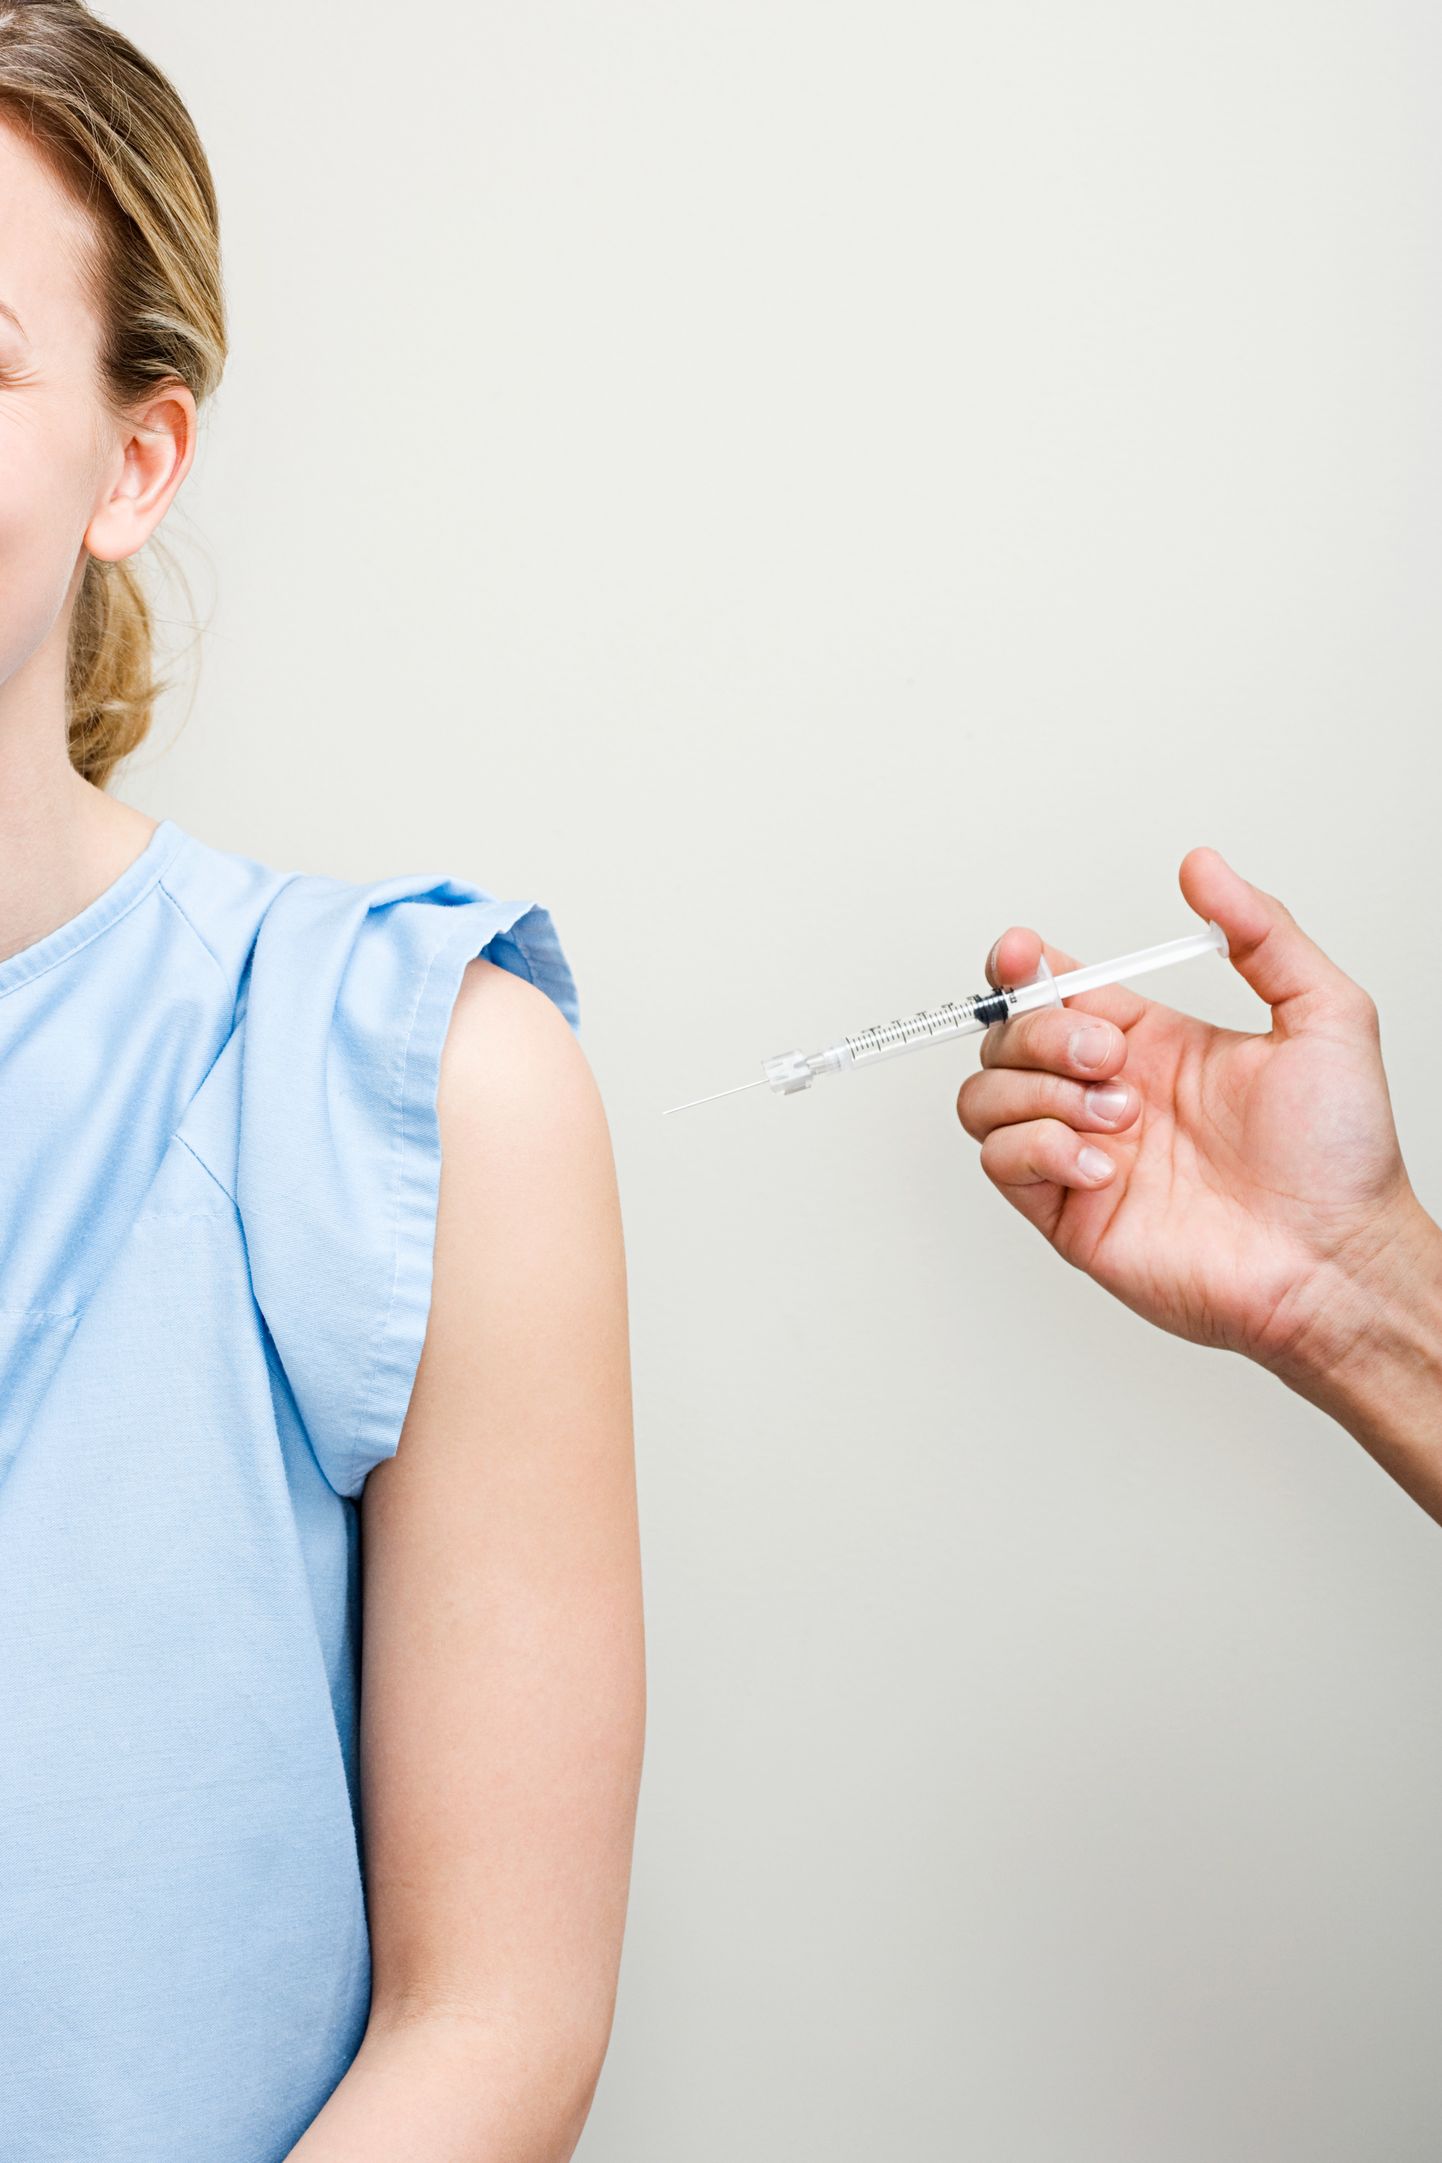 HPV vaktsiiniga hakatakse sellel aastal vaktsineerima kõiki 12-14-aastaseid tüdrukuid.